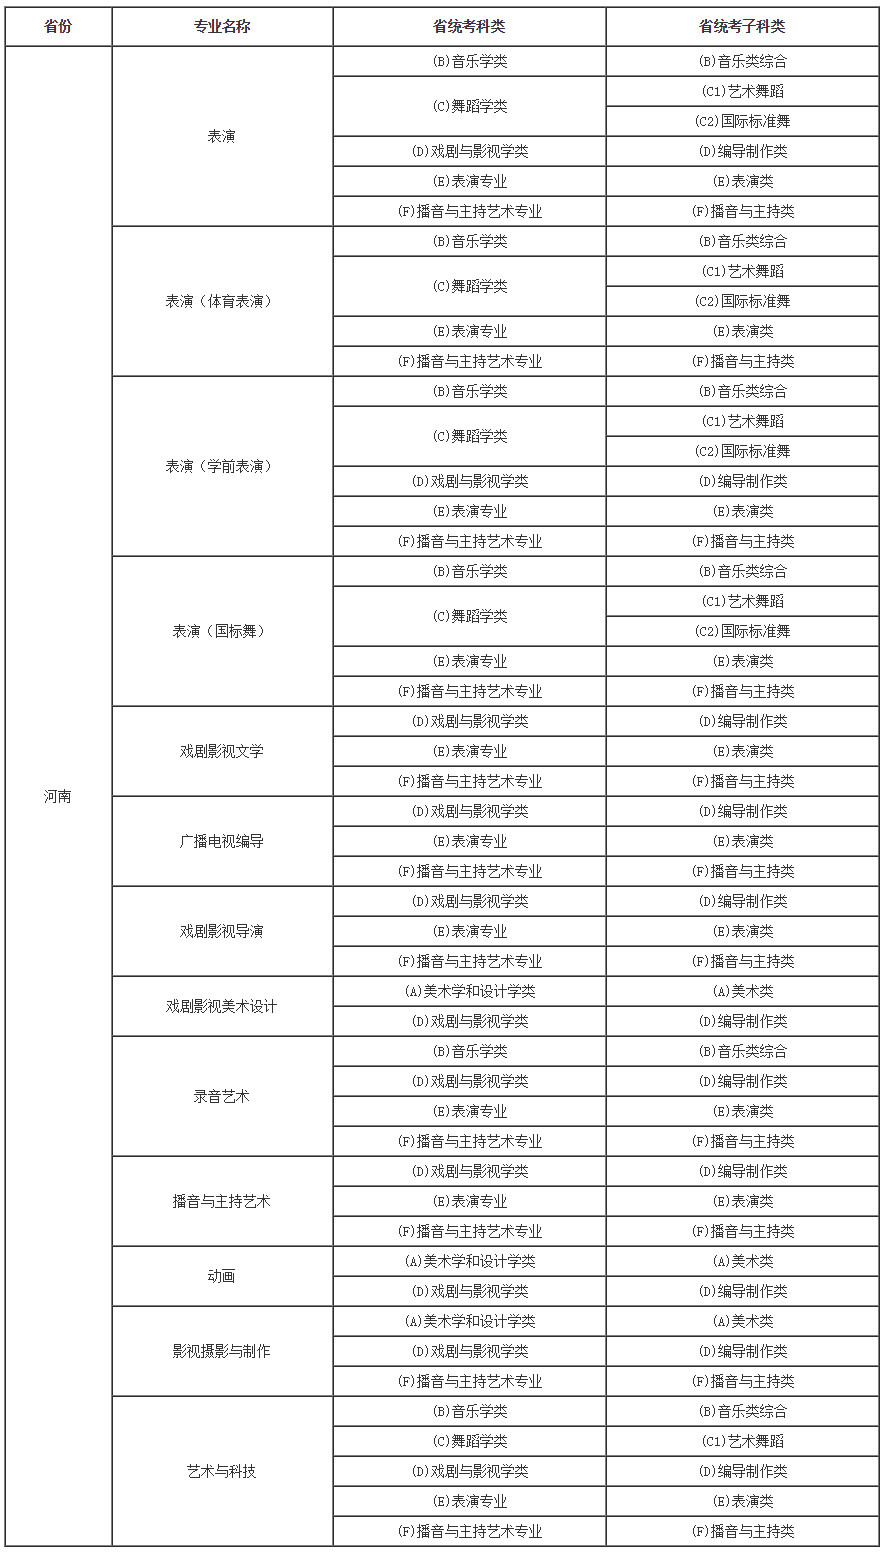 艺术类专业与河南省统考子科类对照表.jpg